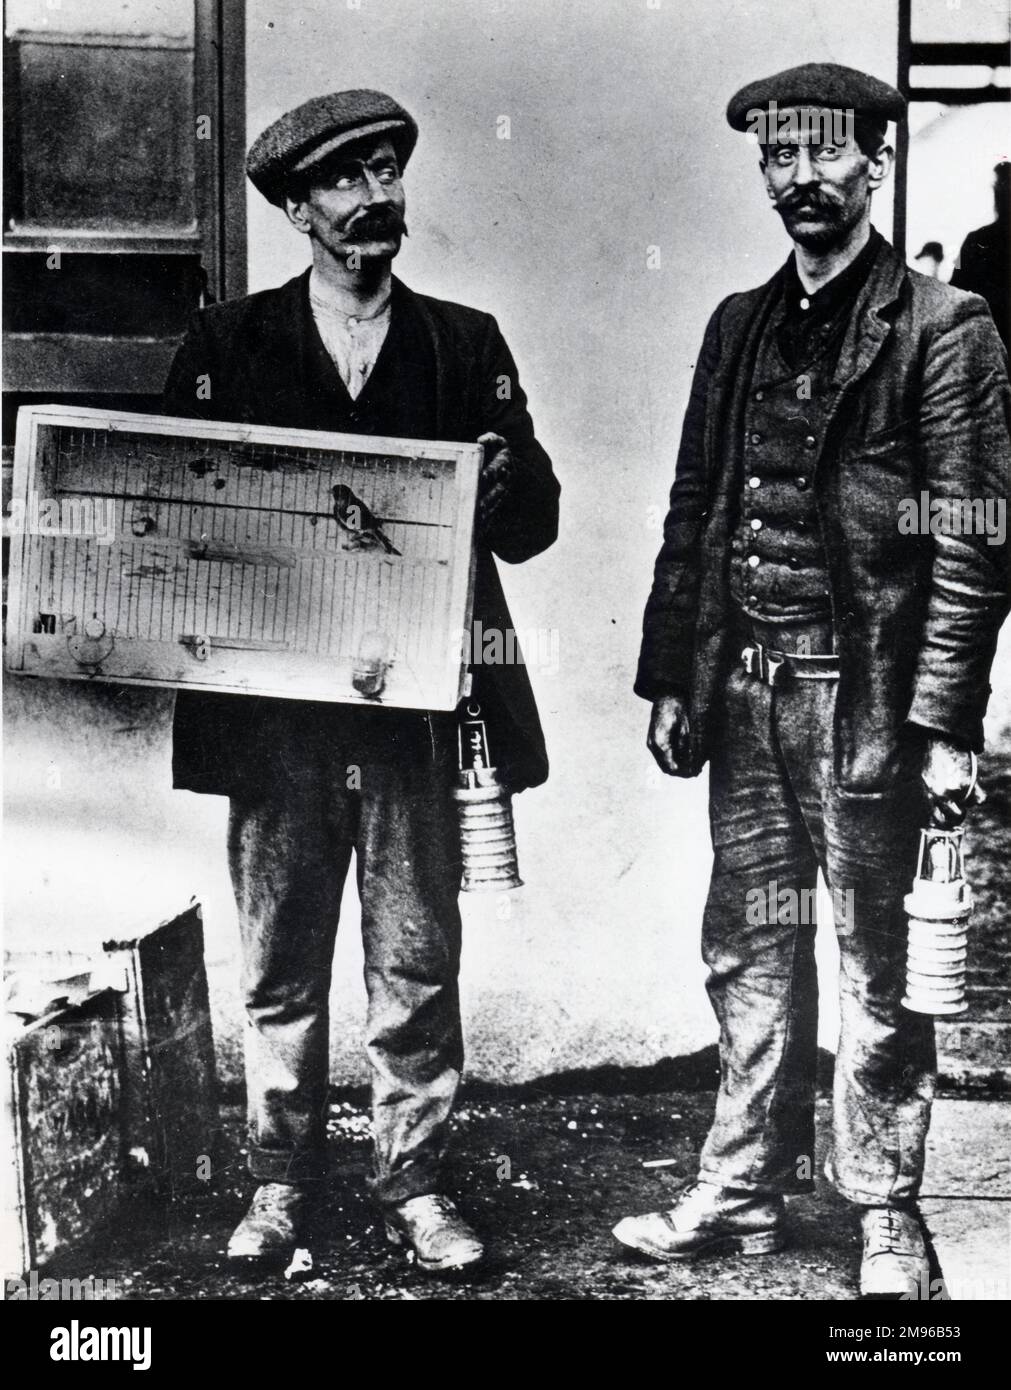 Deux mineurs à la mine de charbon Universal Pit, Senghenydd, près de Caerphilly, Glamourgan, pays de Galles du Sud, avec un canari en cage qui a été utilisé pour tester l'air pour le gaz, ou manque d'oxygène. Les hommes portent les premières versions de la lampe de sécurité d'huile. Banque D'Images